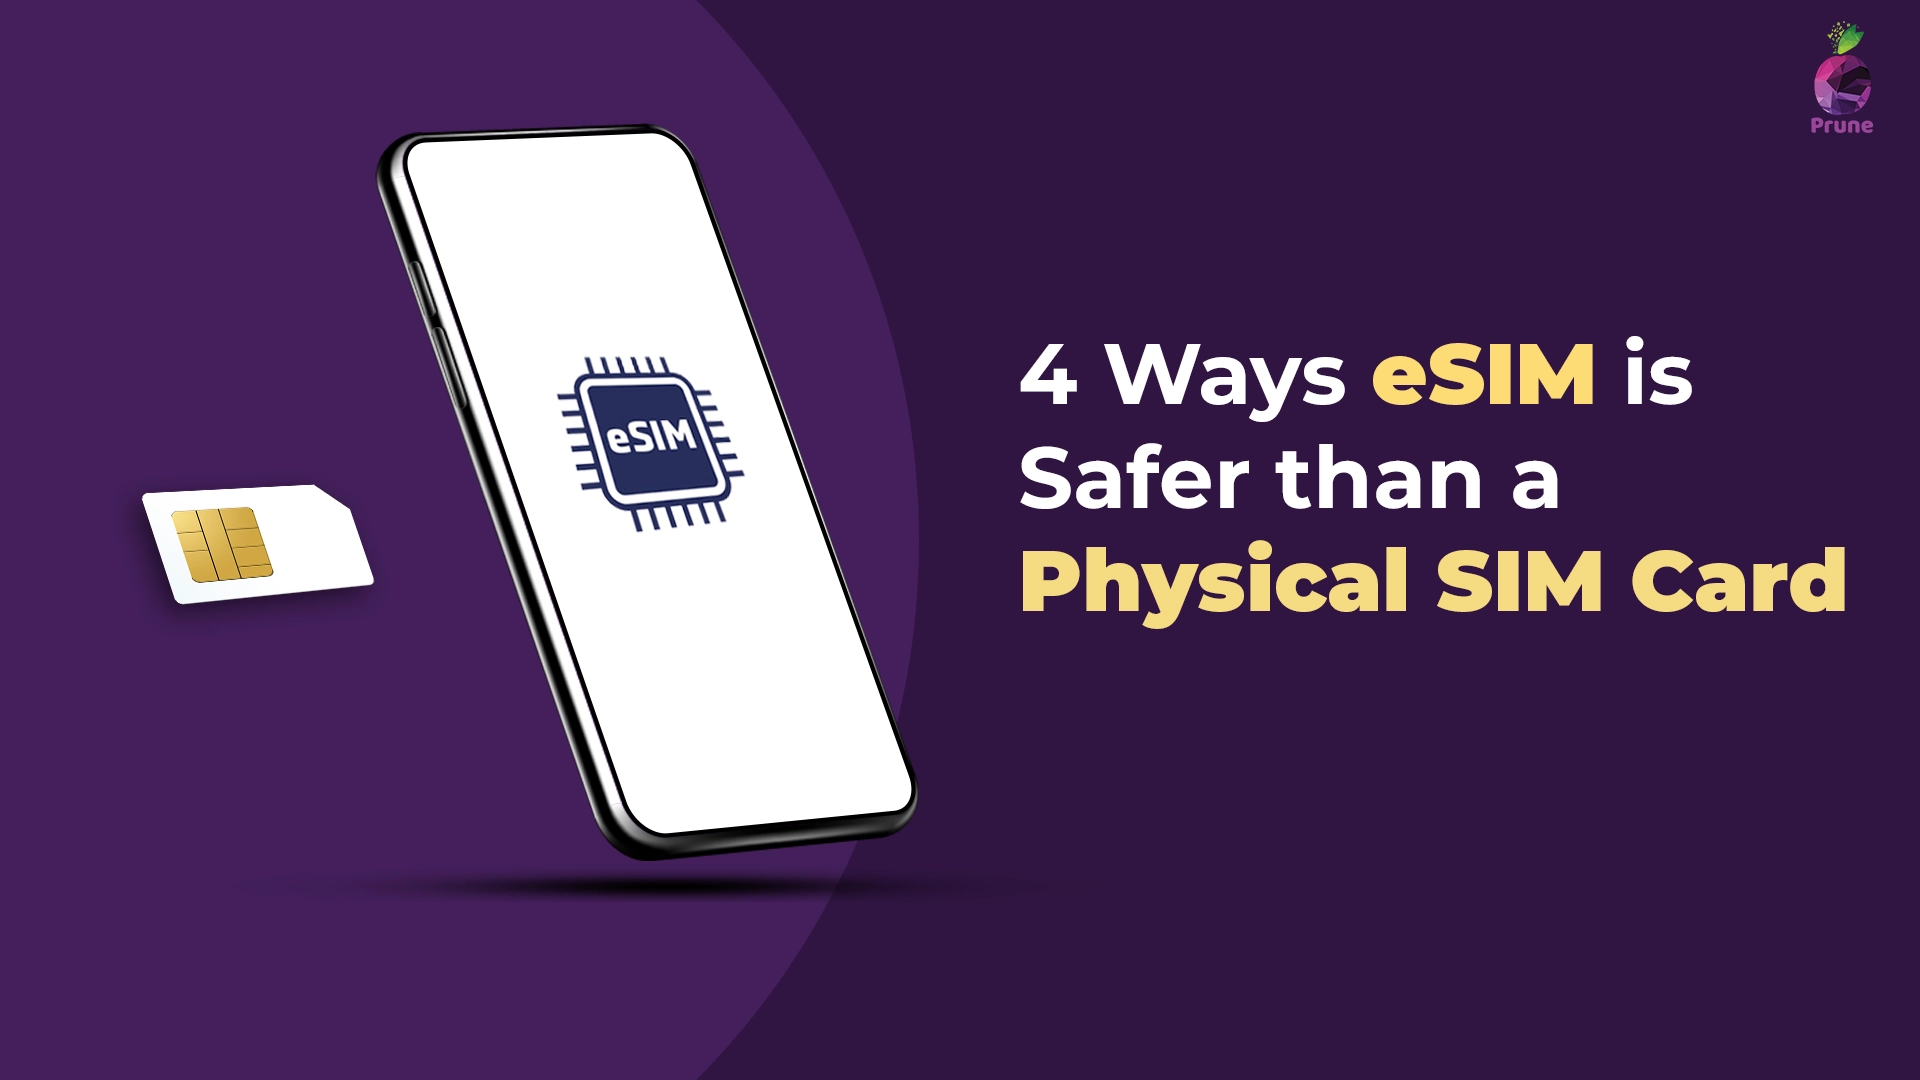 4 Ways eSIM is Safer than a Physical SIM Card